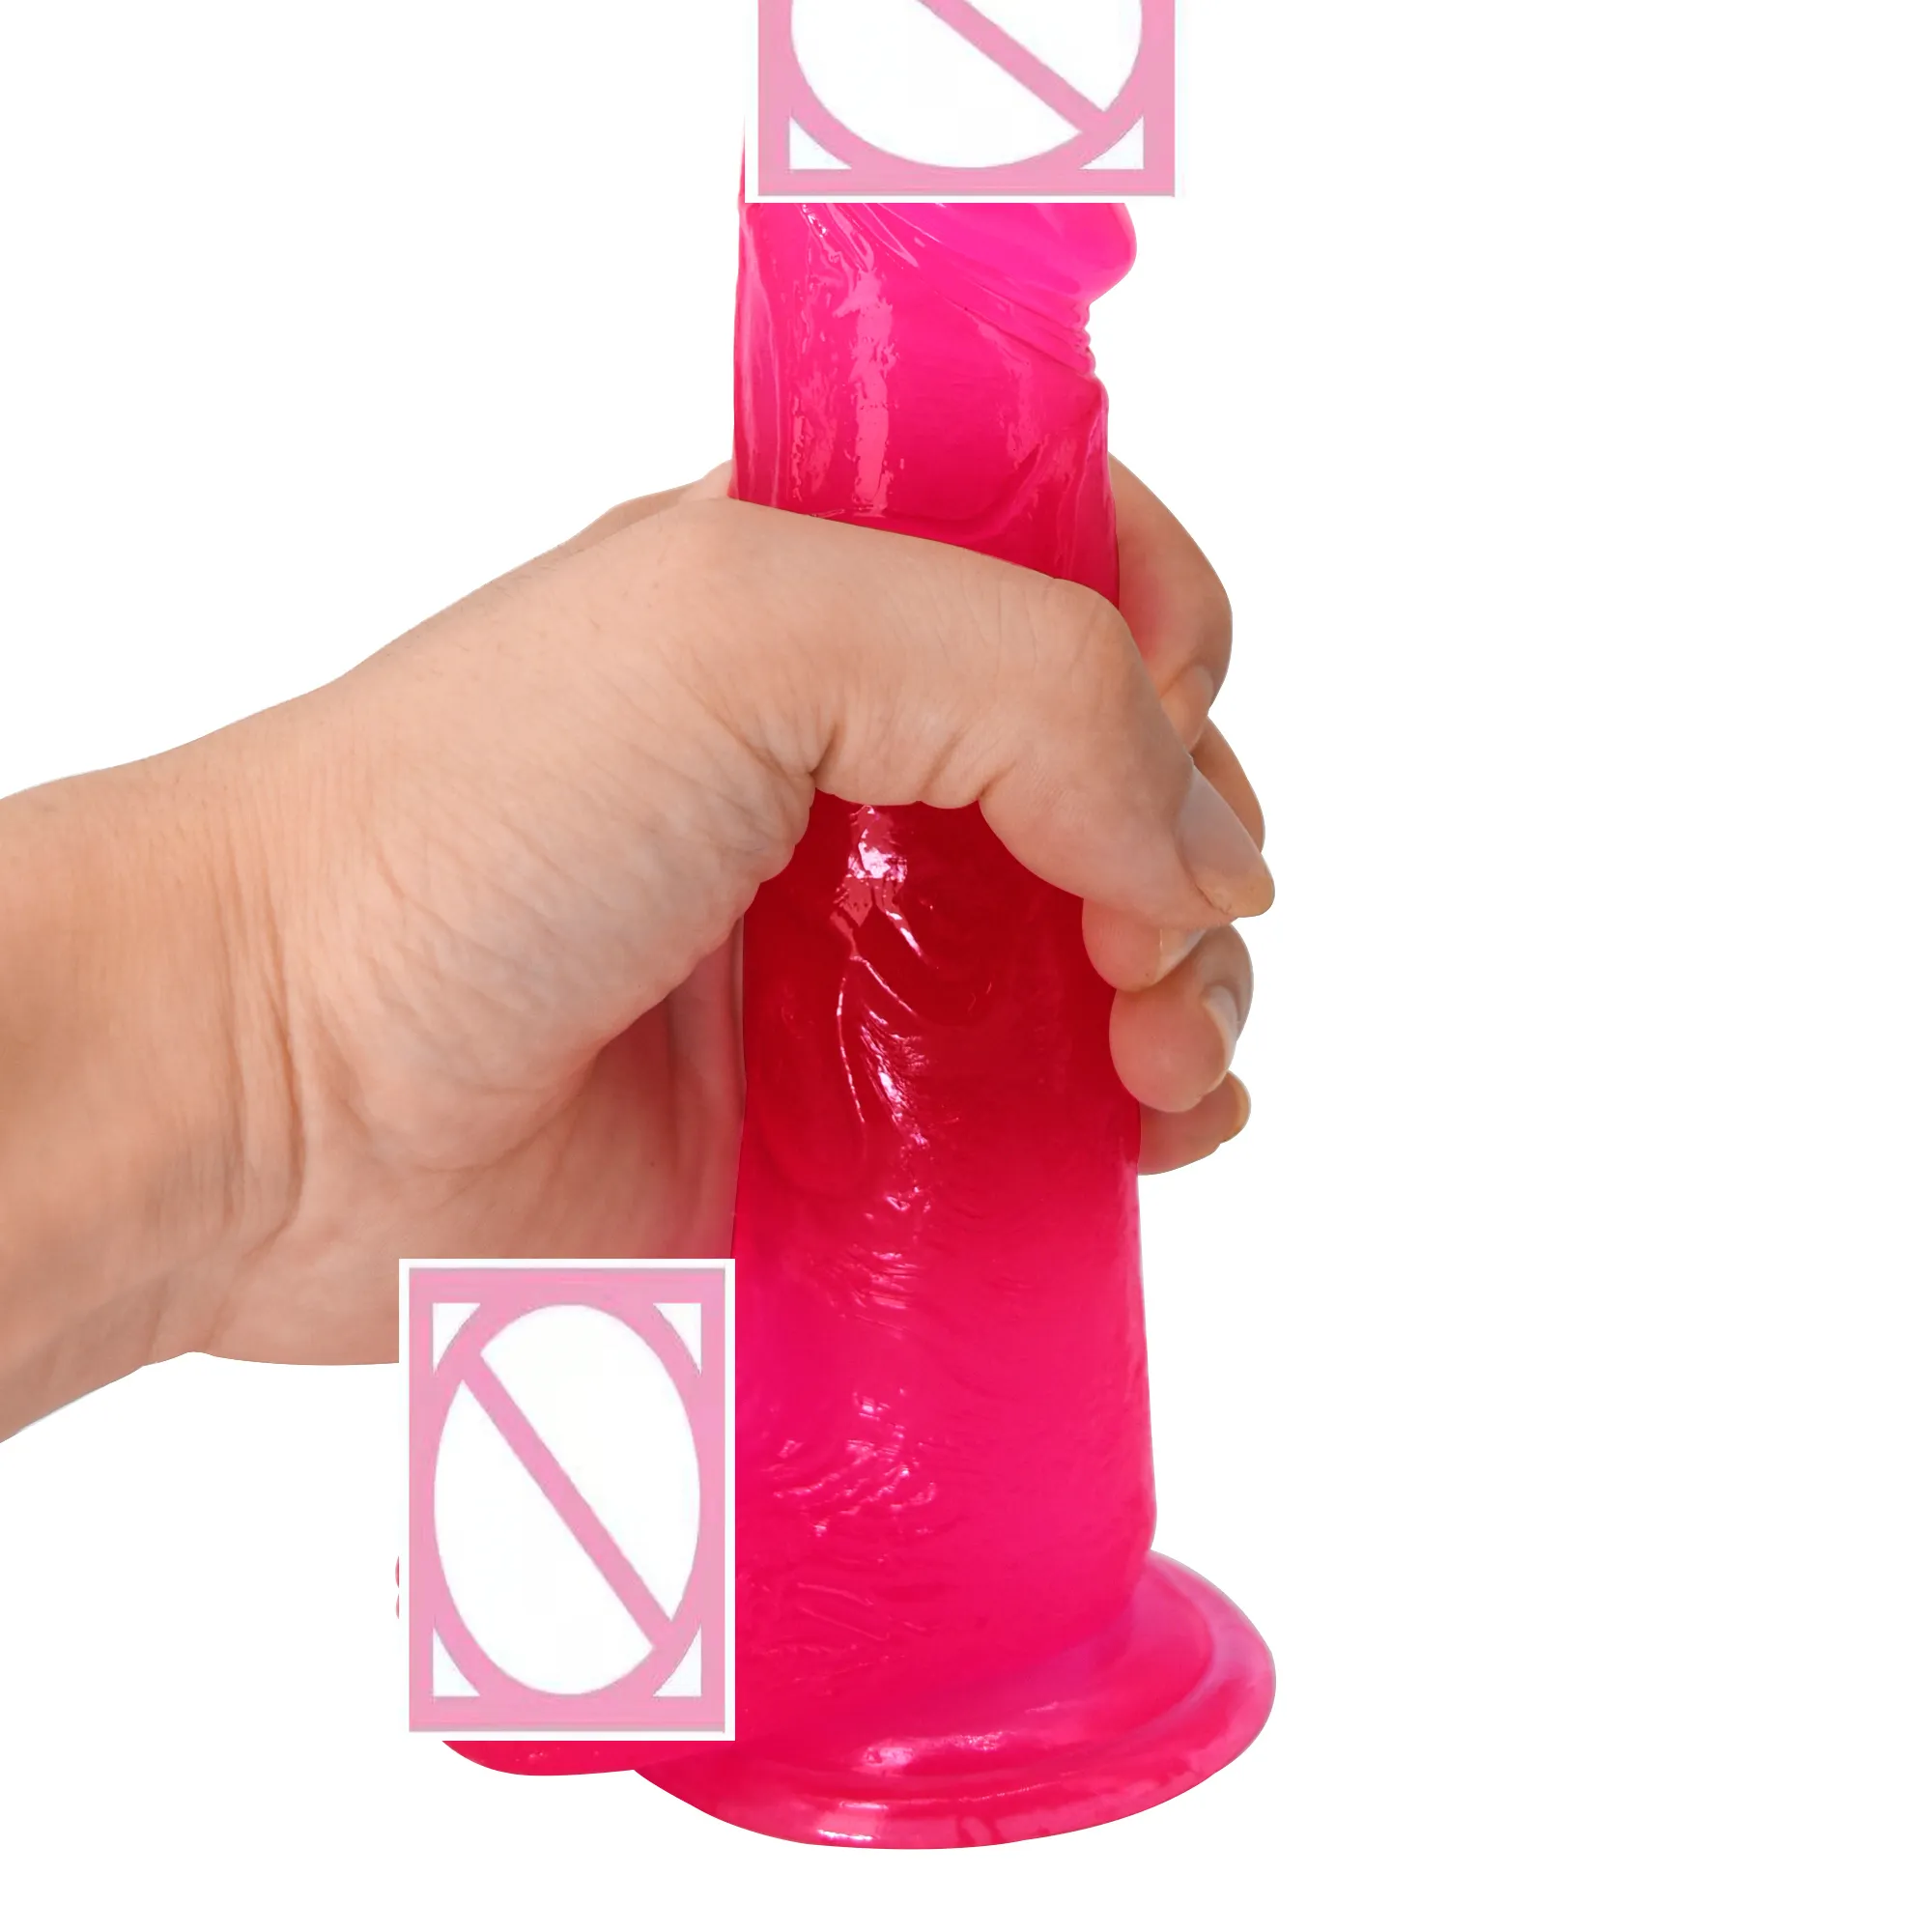 Xxx hot oem xxxxxxxx vidéo pour vagin machine à sexe produits de sexe réaliste cristal clair coloré gode sextoy juguetes sexuals